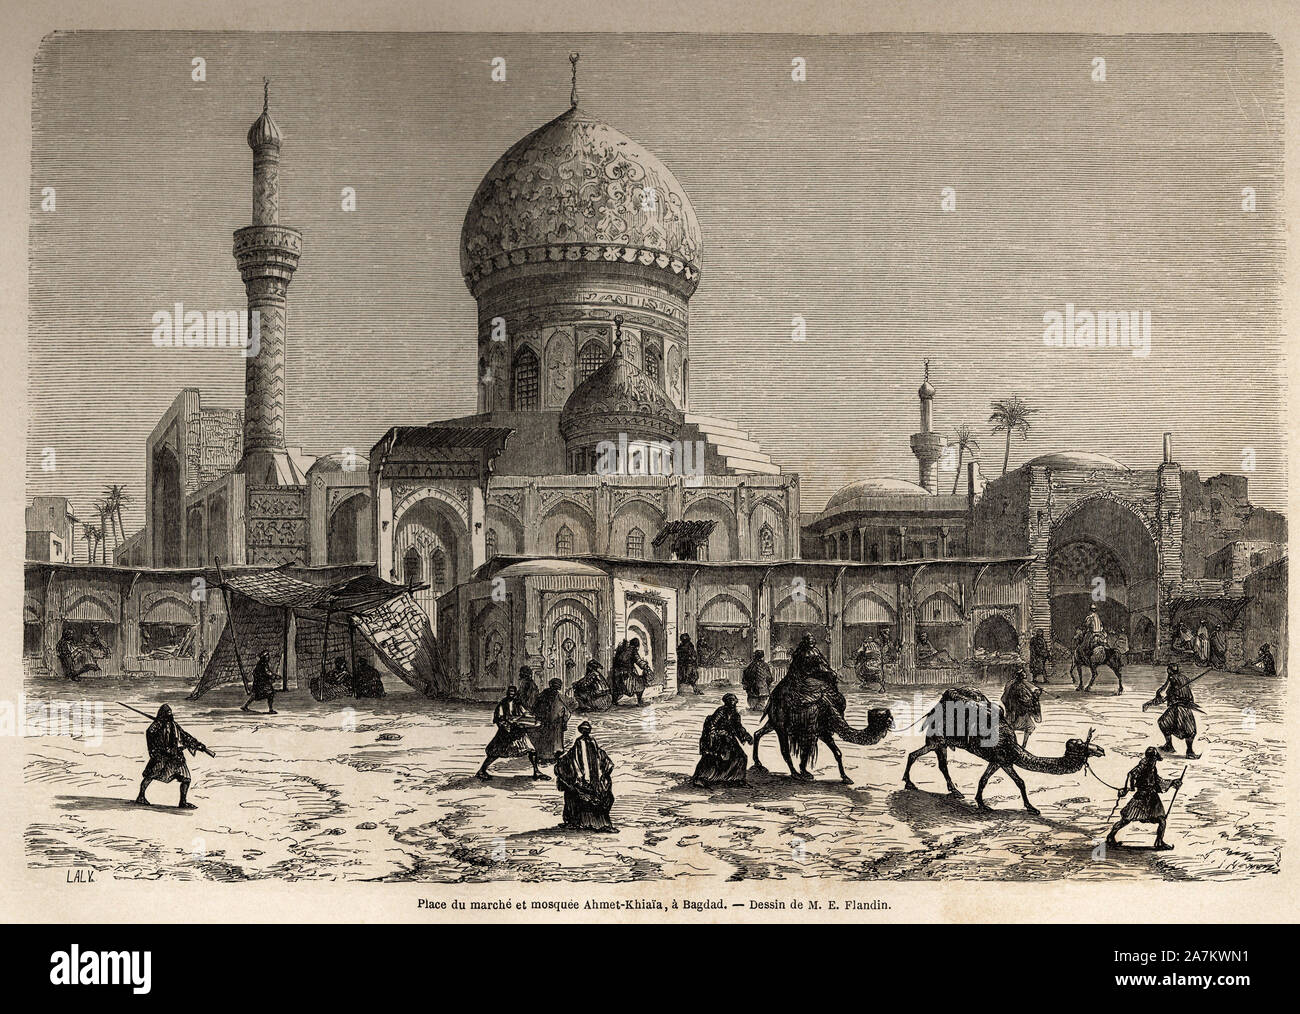 La place du marche et la mosquee Ahmet Khiaia, a Bagdad, dessin de Eugene Flandin (1809-1876), pour illustrer son voyage en Mesopotamie, en 1840-1842. Stock Photo